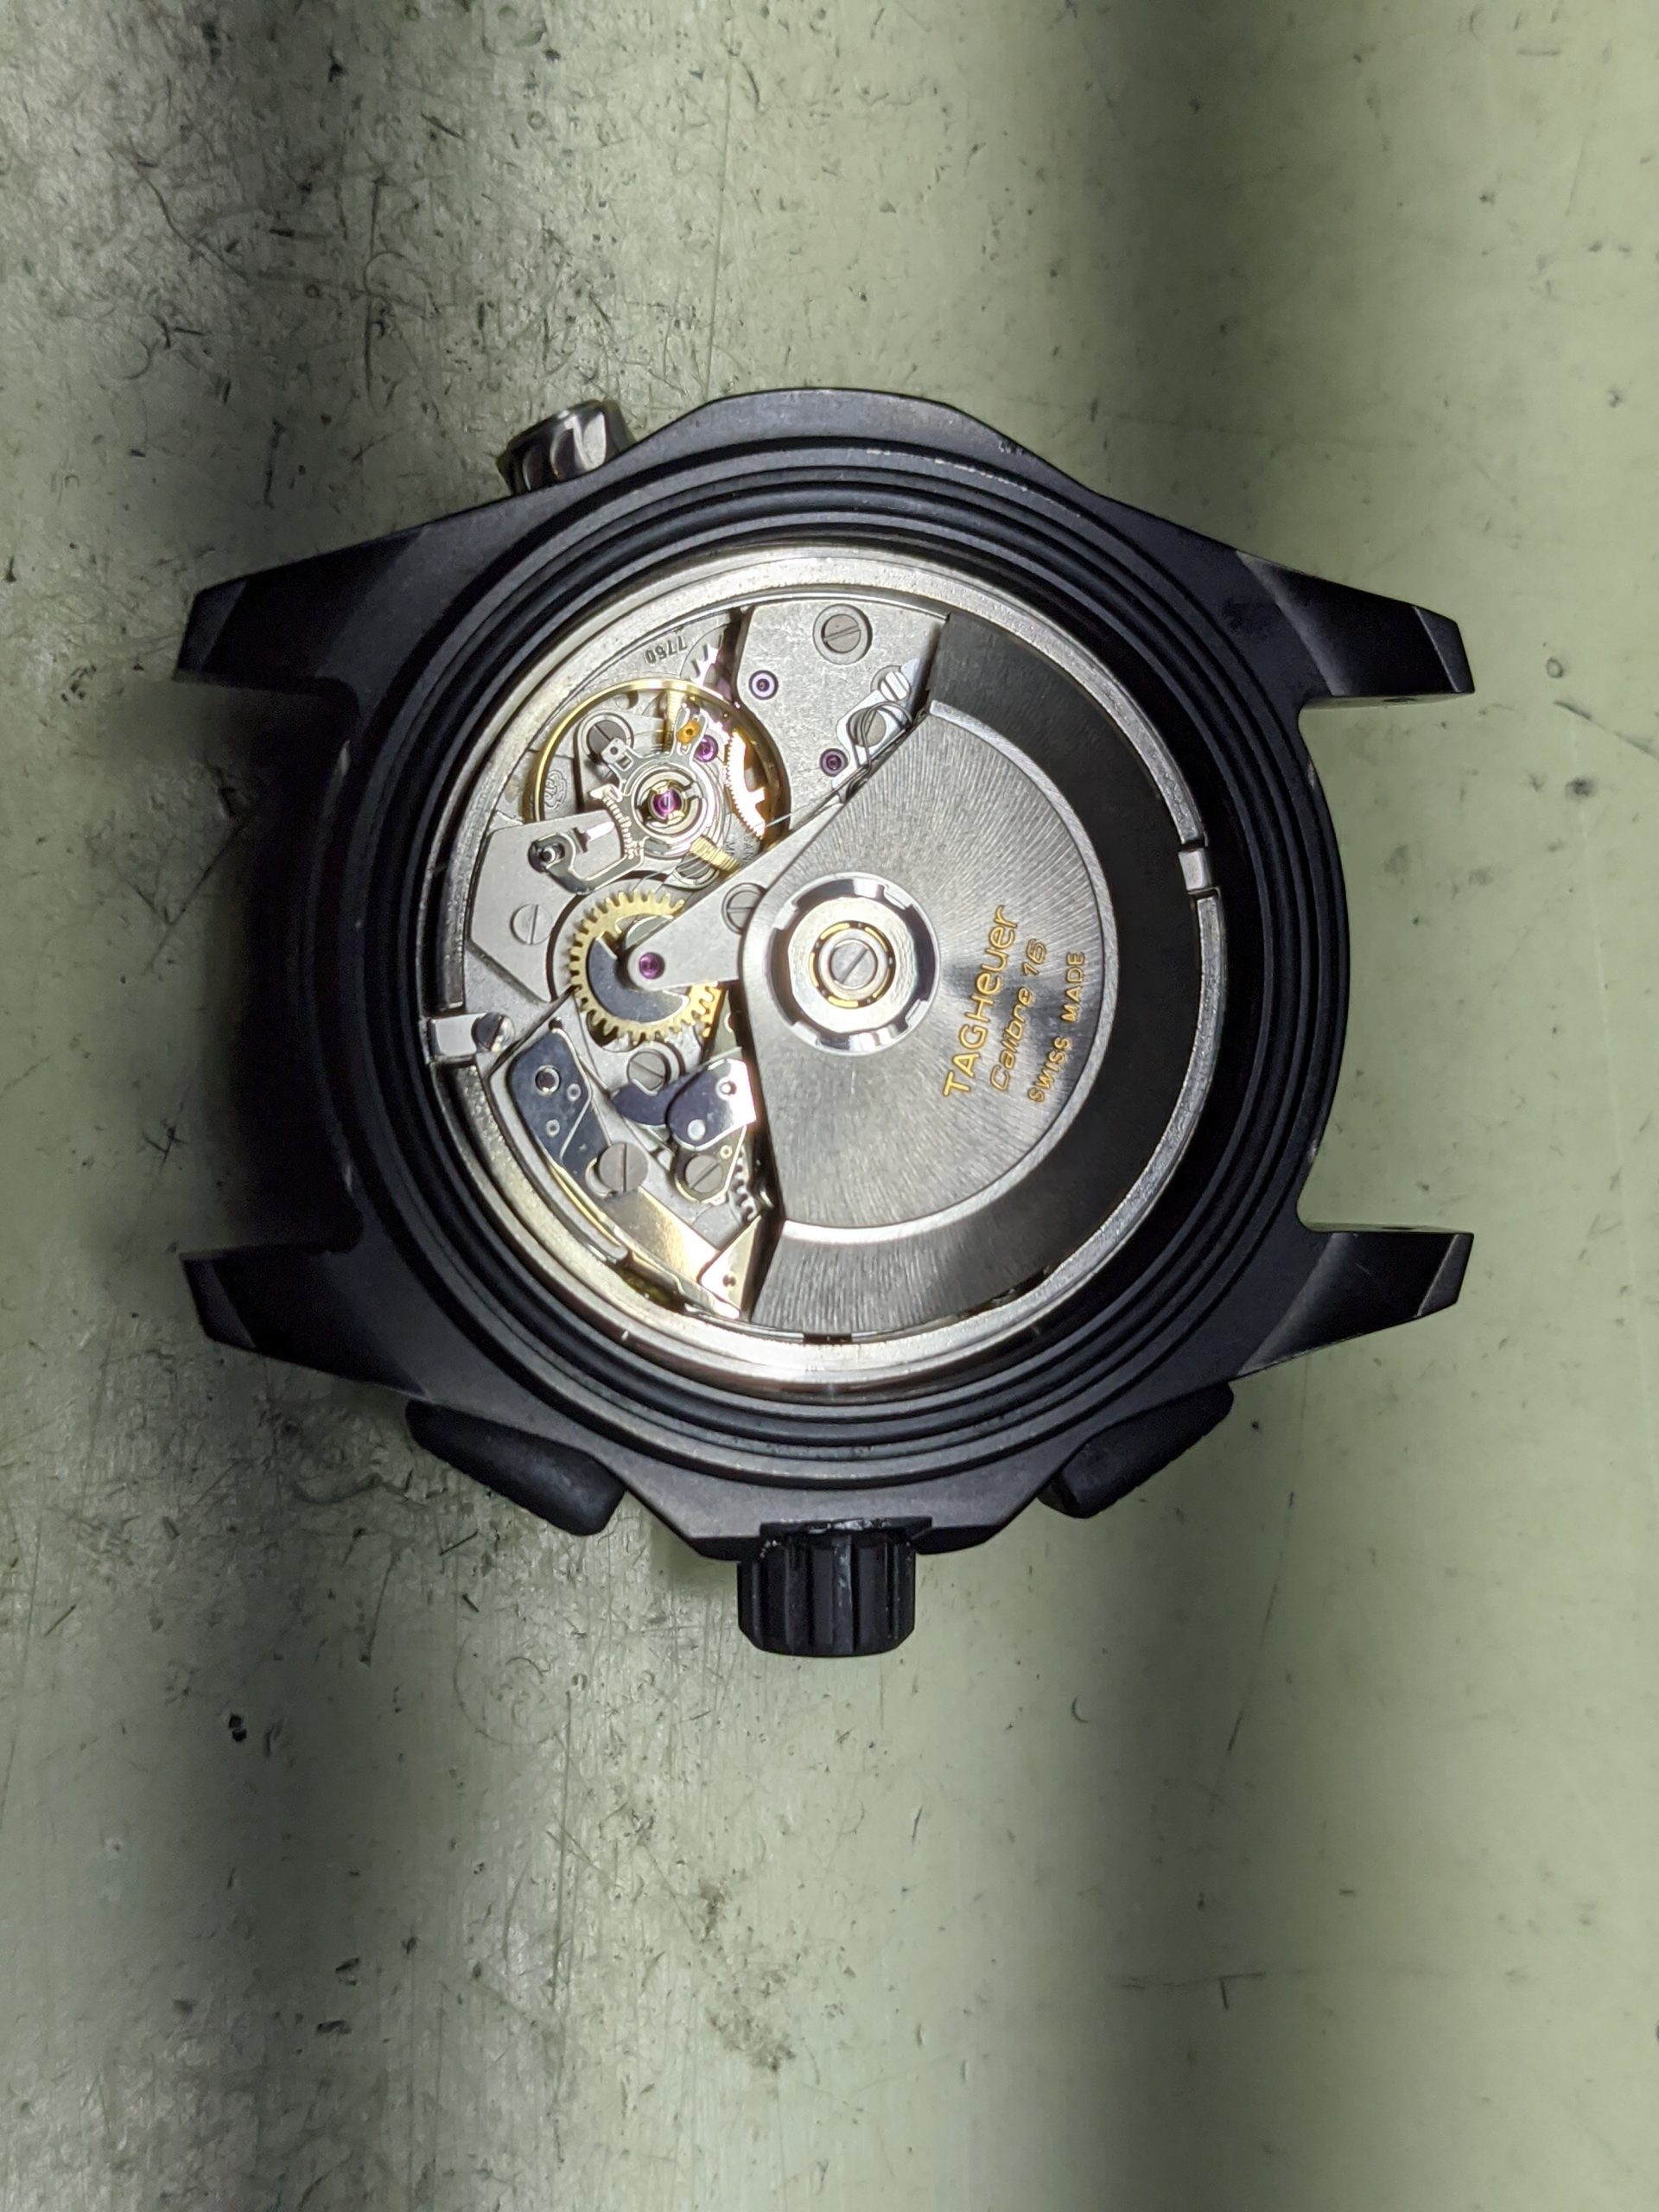 Paul Laurent Watchmaker - Clock Repairs & Watch Repairs Brisbane